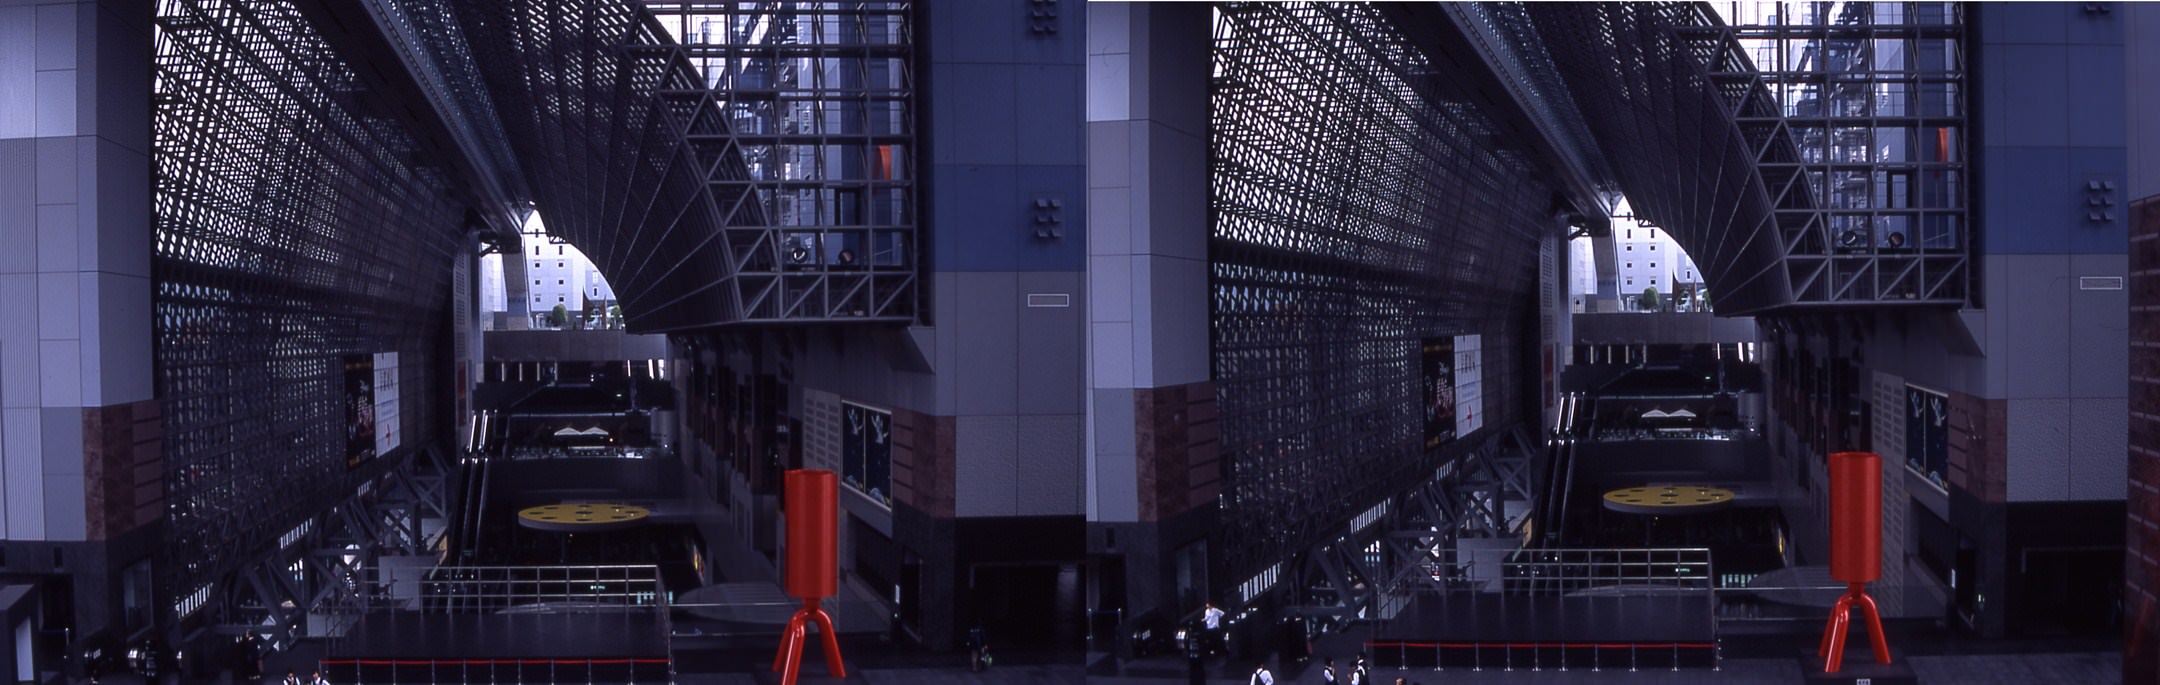 Japon Gare de Kyoto ( stéréophoto)